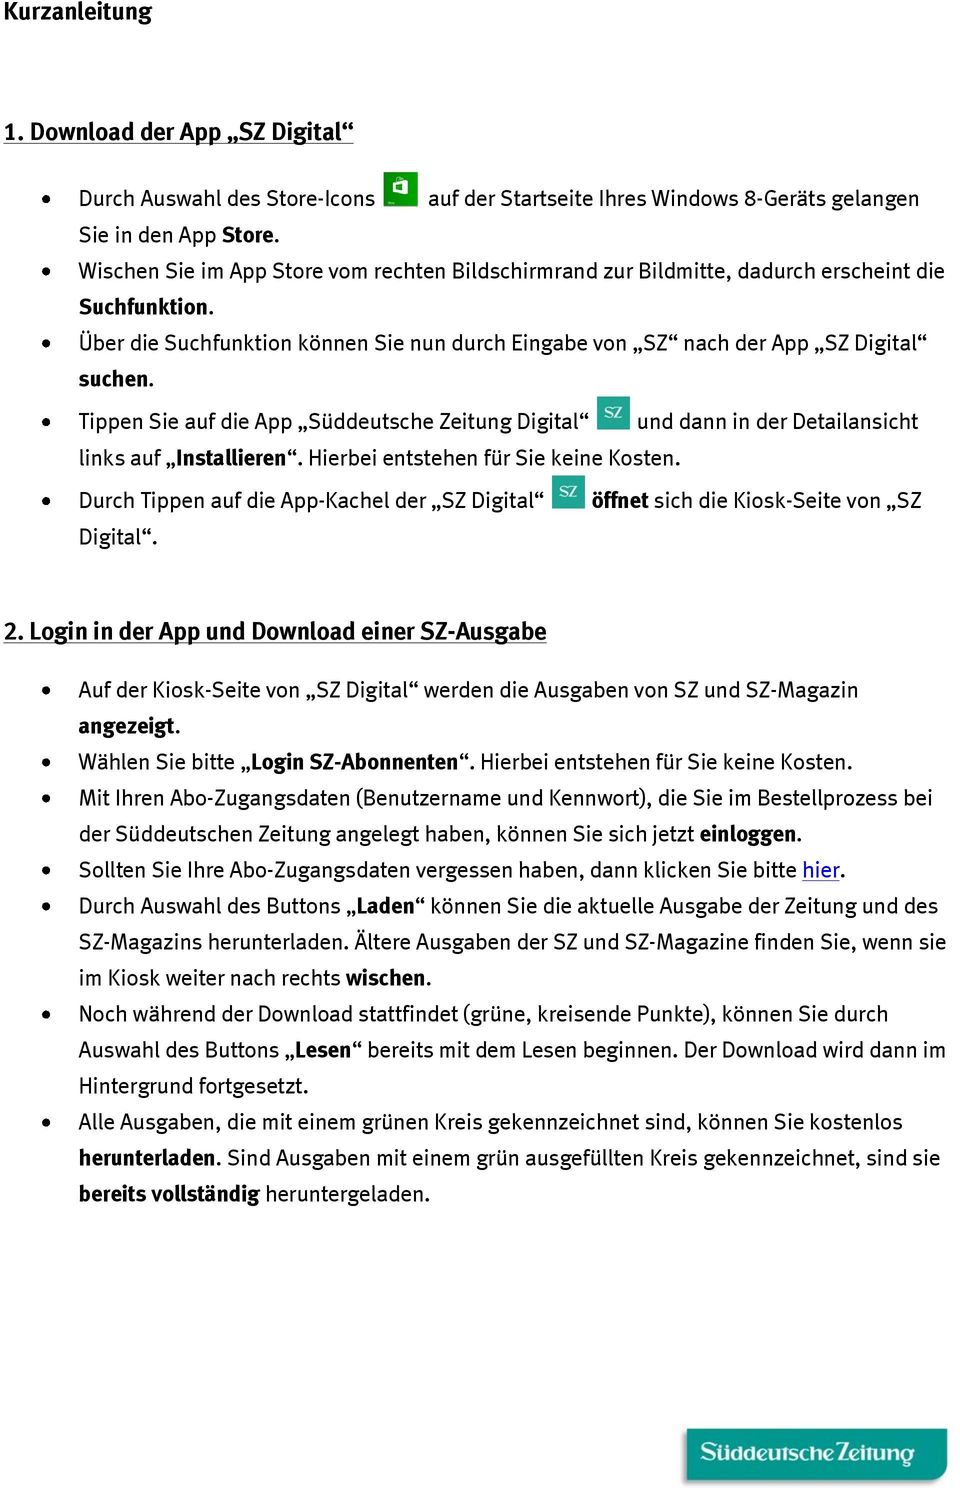 Tippen Sie auf die App Süddeutsche Zeitung Digital und dann in der Detailansicht links auf Installieren. Hierbei entstehen für Sie keine Kosten.